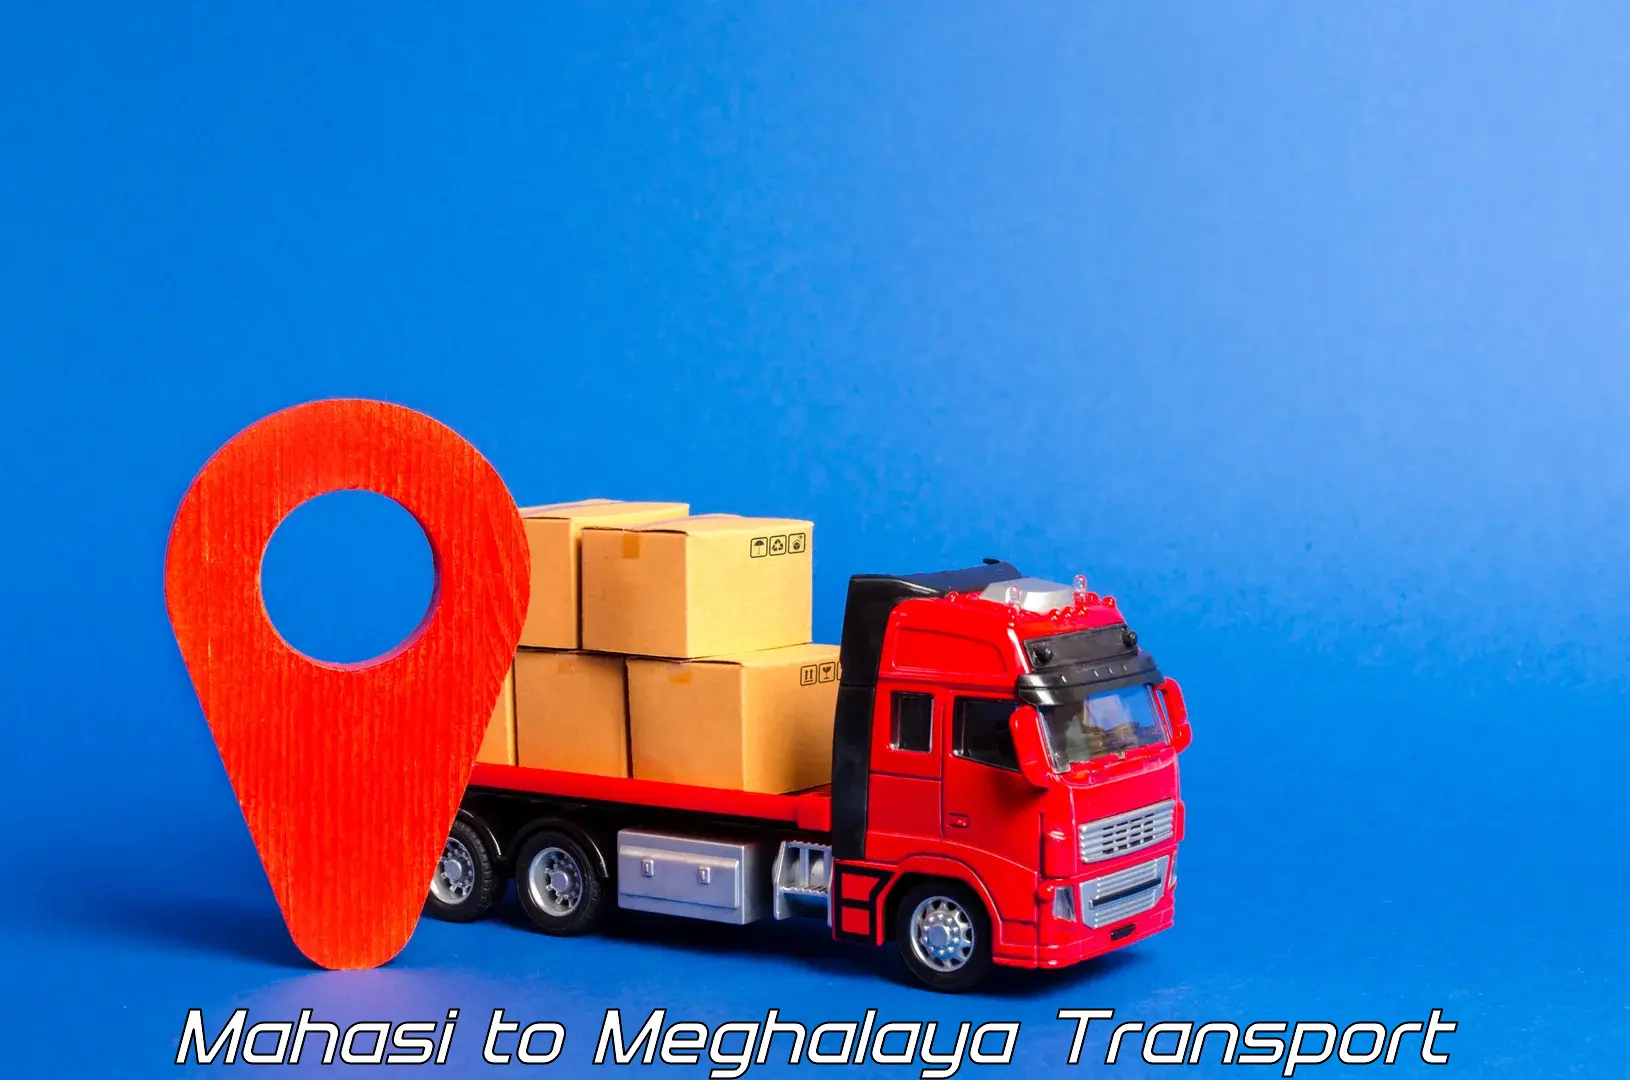 India truck logistics services Mahasi to Meghalaya